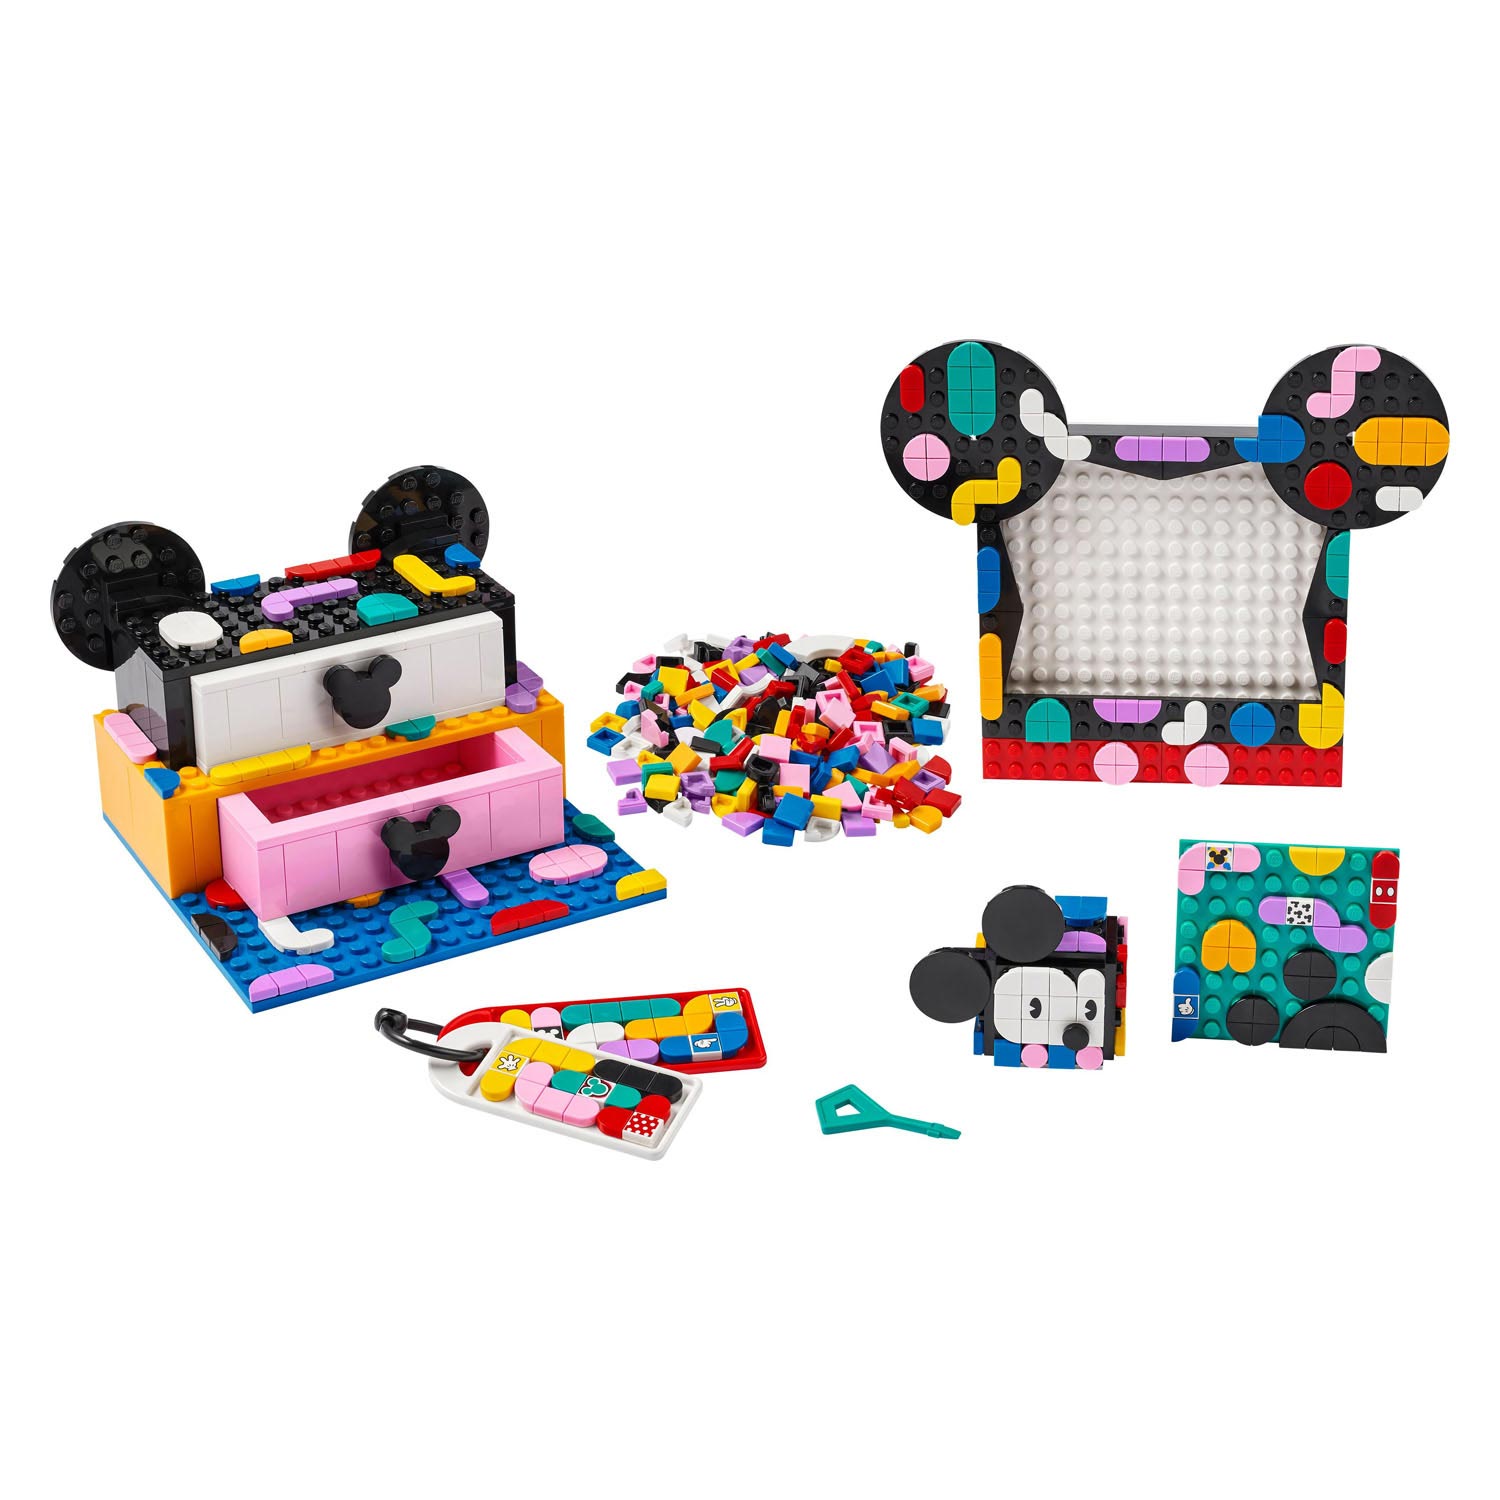 LEGO DOTS 41964 Mickey et Minnie Mouse: La rentrée scolaire